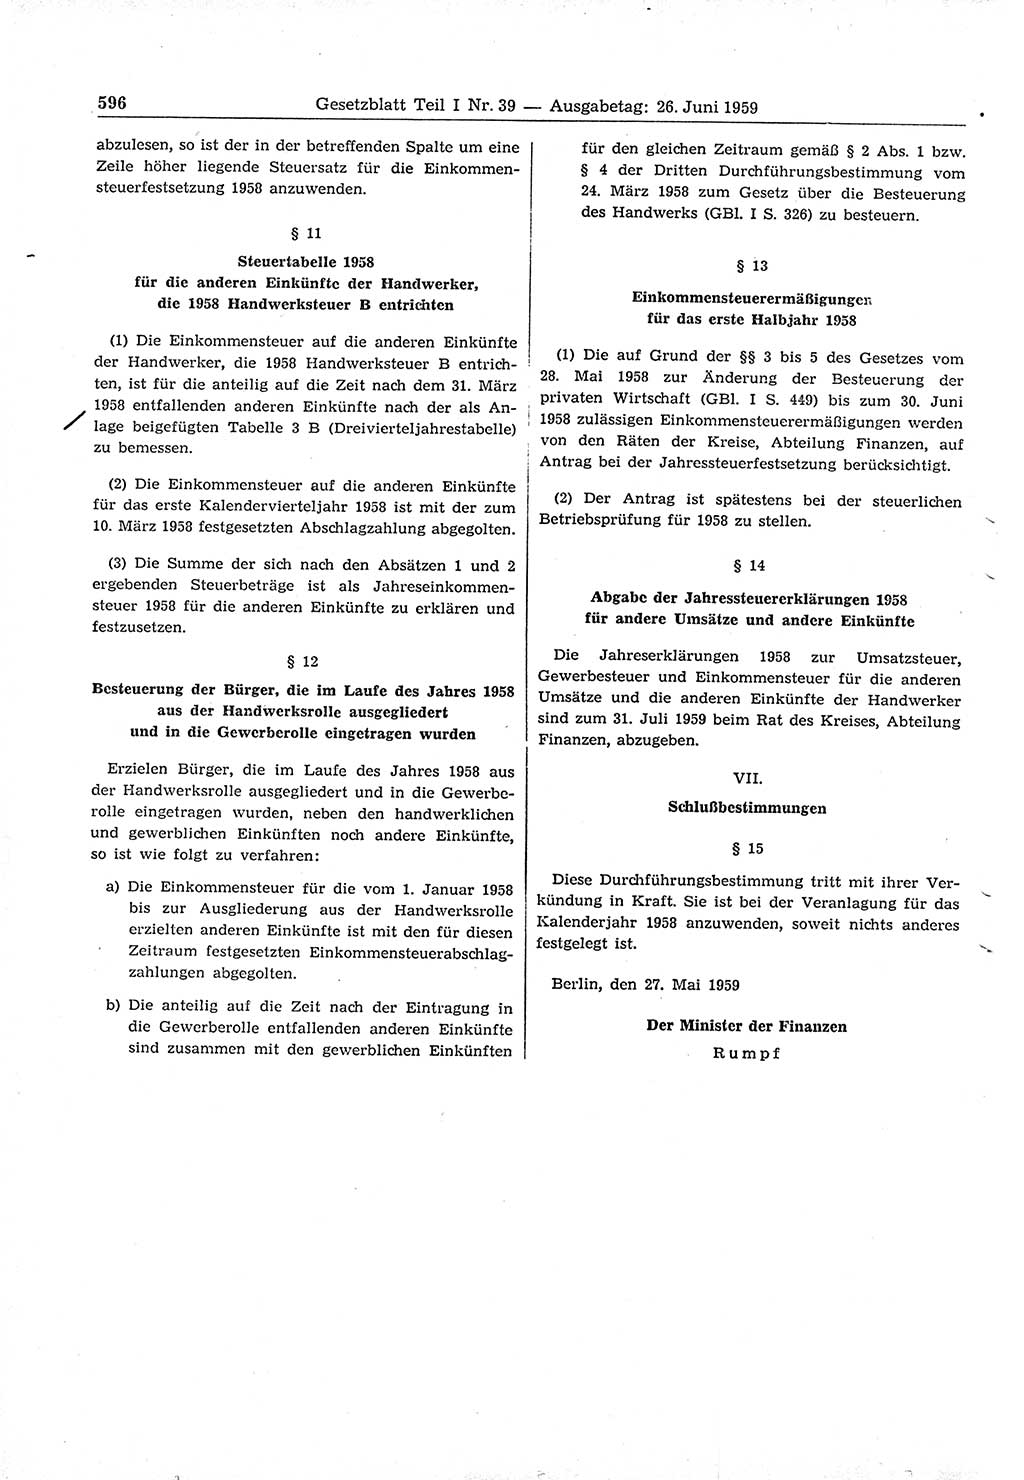 Gesetzblatt (GBl.) der Deutschen Demokratischen Republik (DDR) Teil Ⅰ 1959, Seite 596 (GBl. DDR Ⅰ 1959, S. 596)